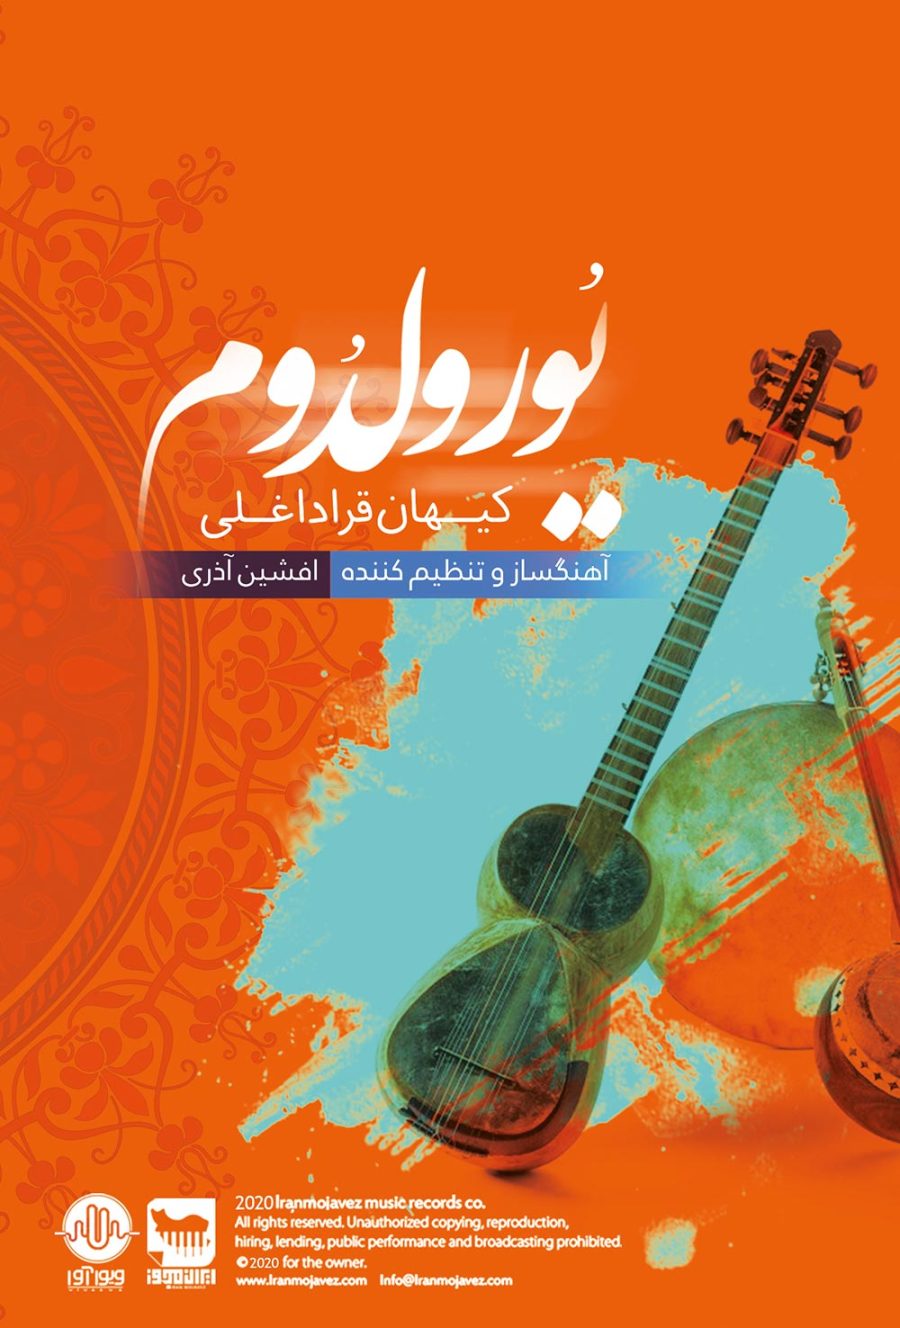 آلبوم یورولدوم از کیهان قراداغلی و افشین آذری